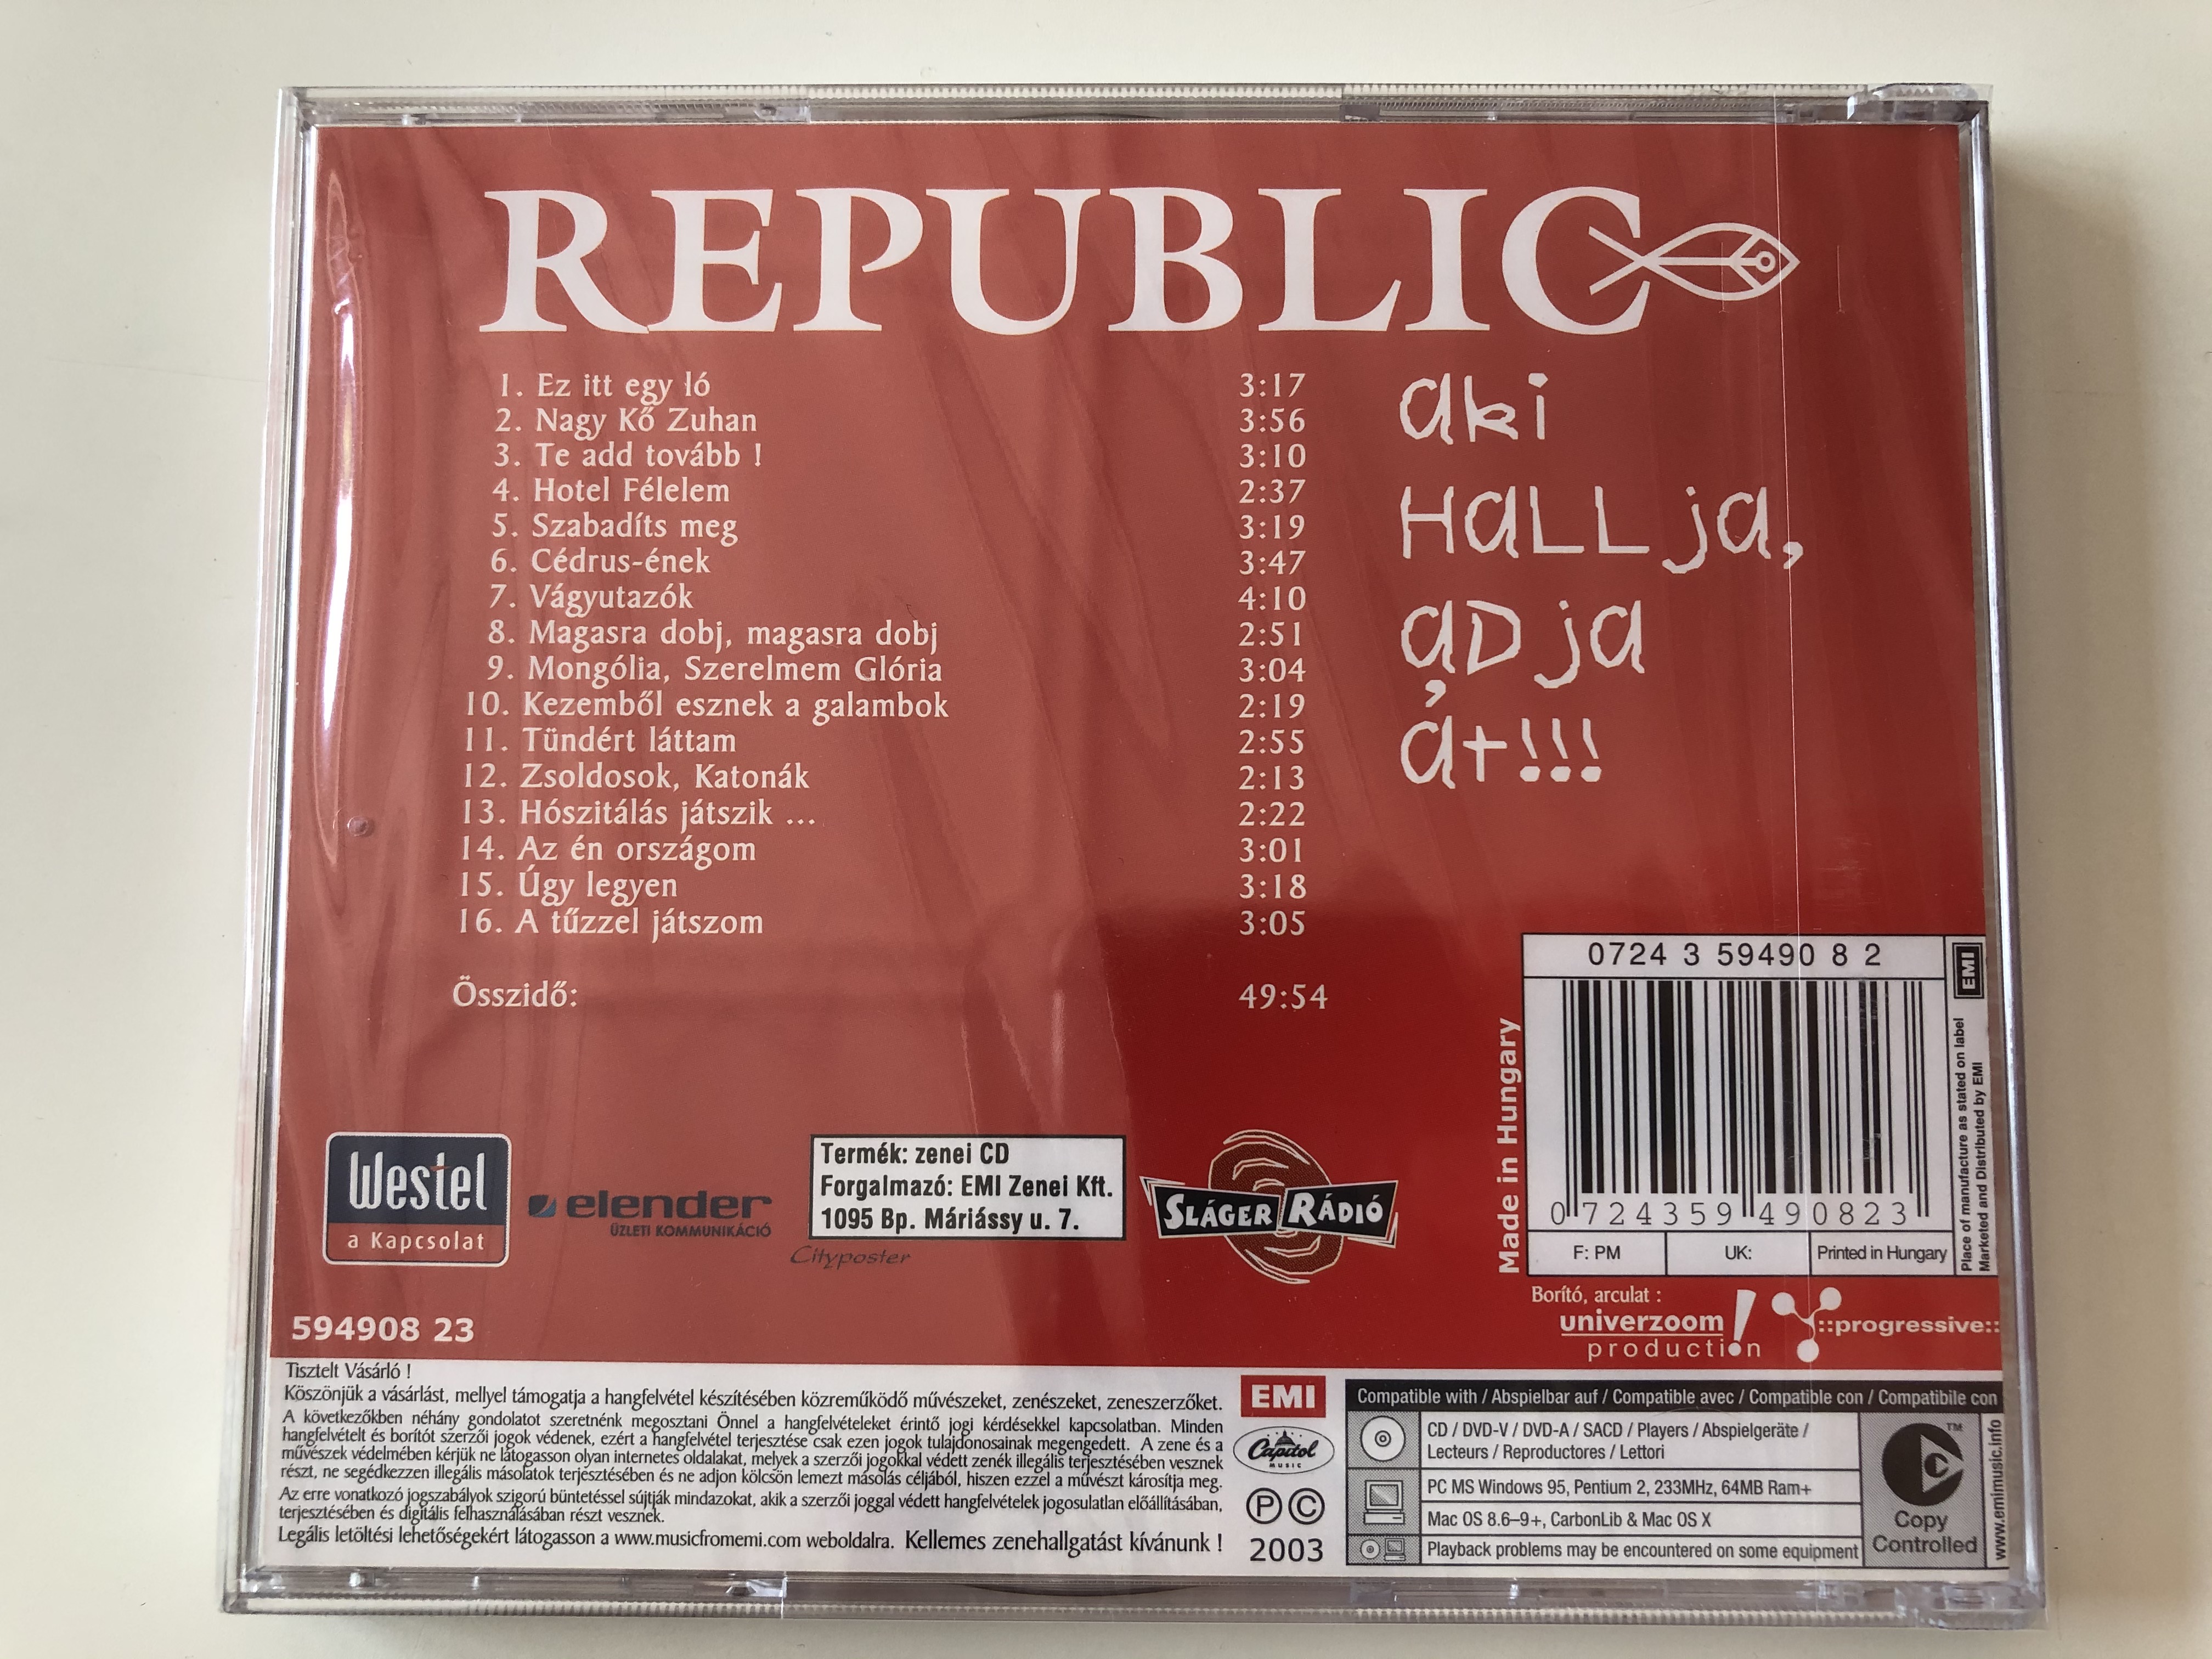 republic-aki-hallja-adja-t-emi-audio-cd-2003-594908-23-2-.jpg